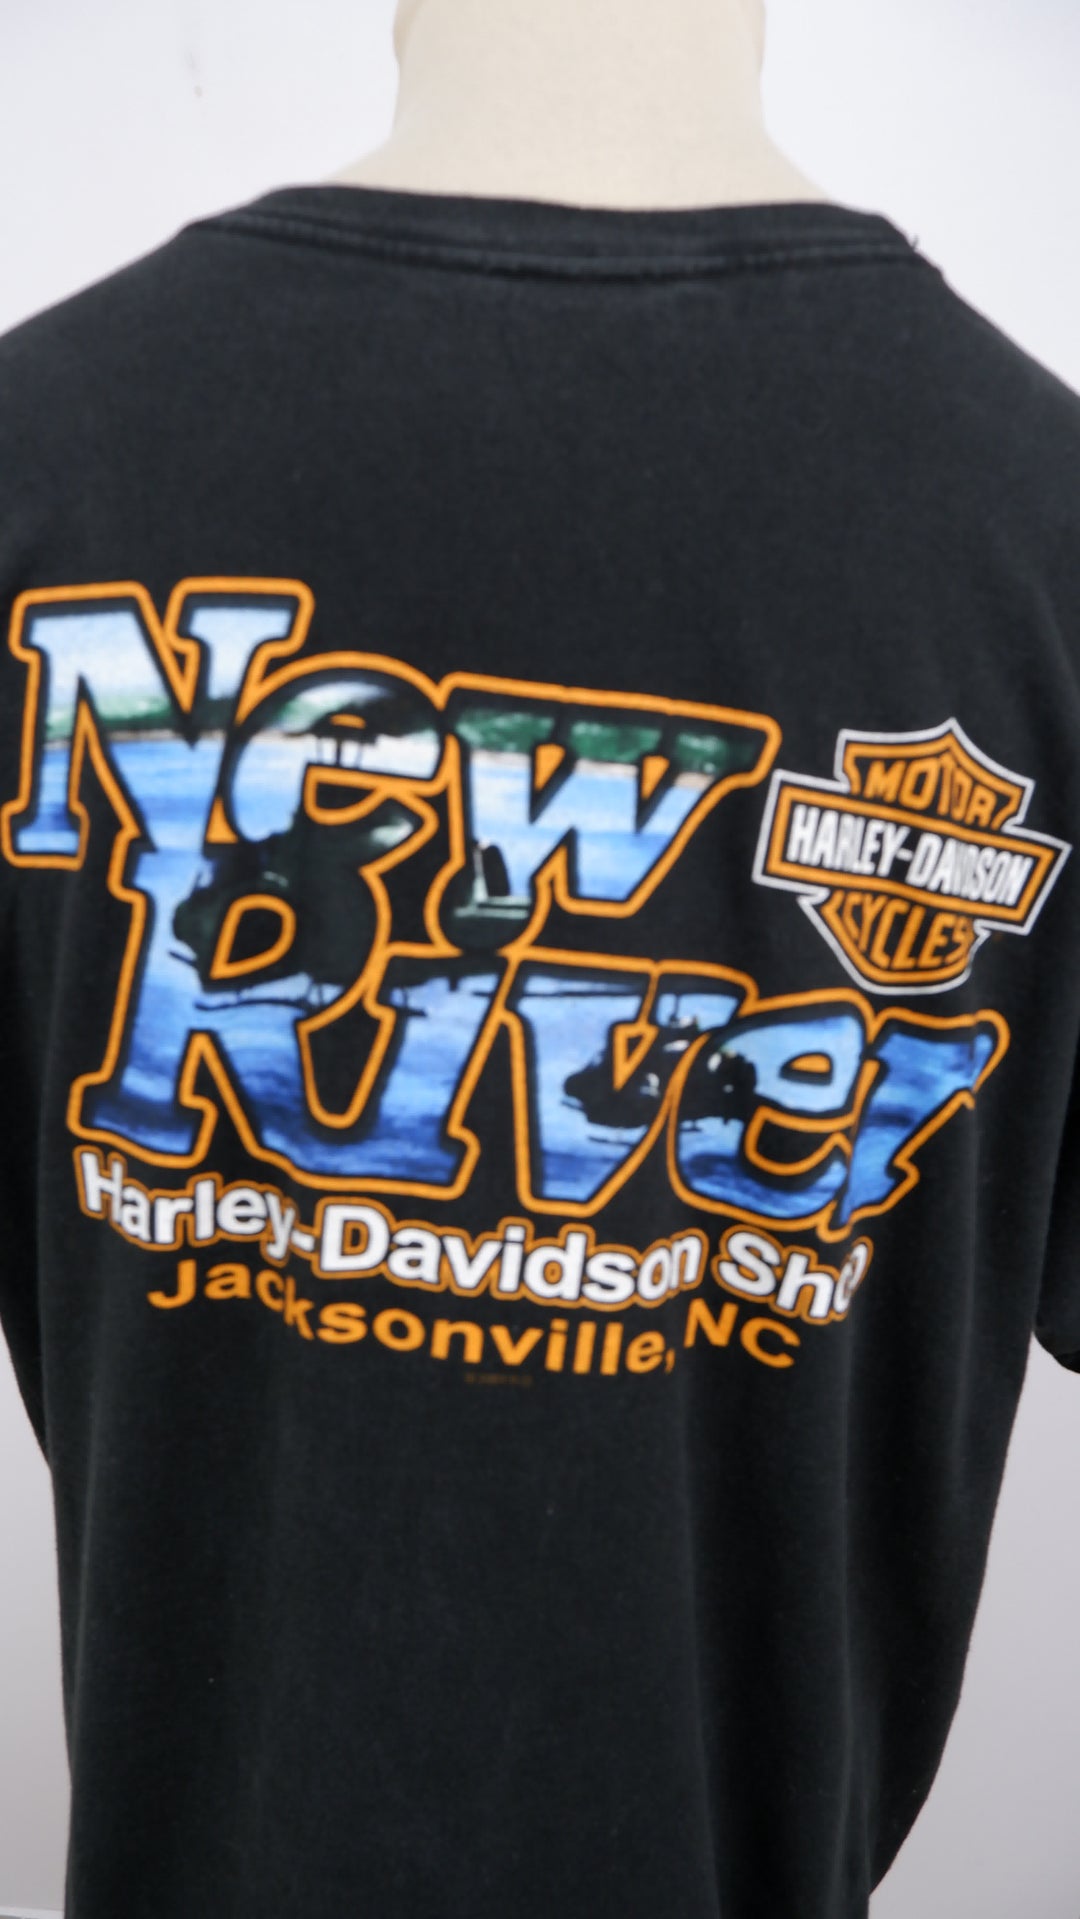 Vintage Harley Davidson New River Shop Jacksonville NC T-Shirt Made In USA